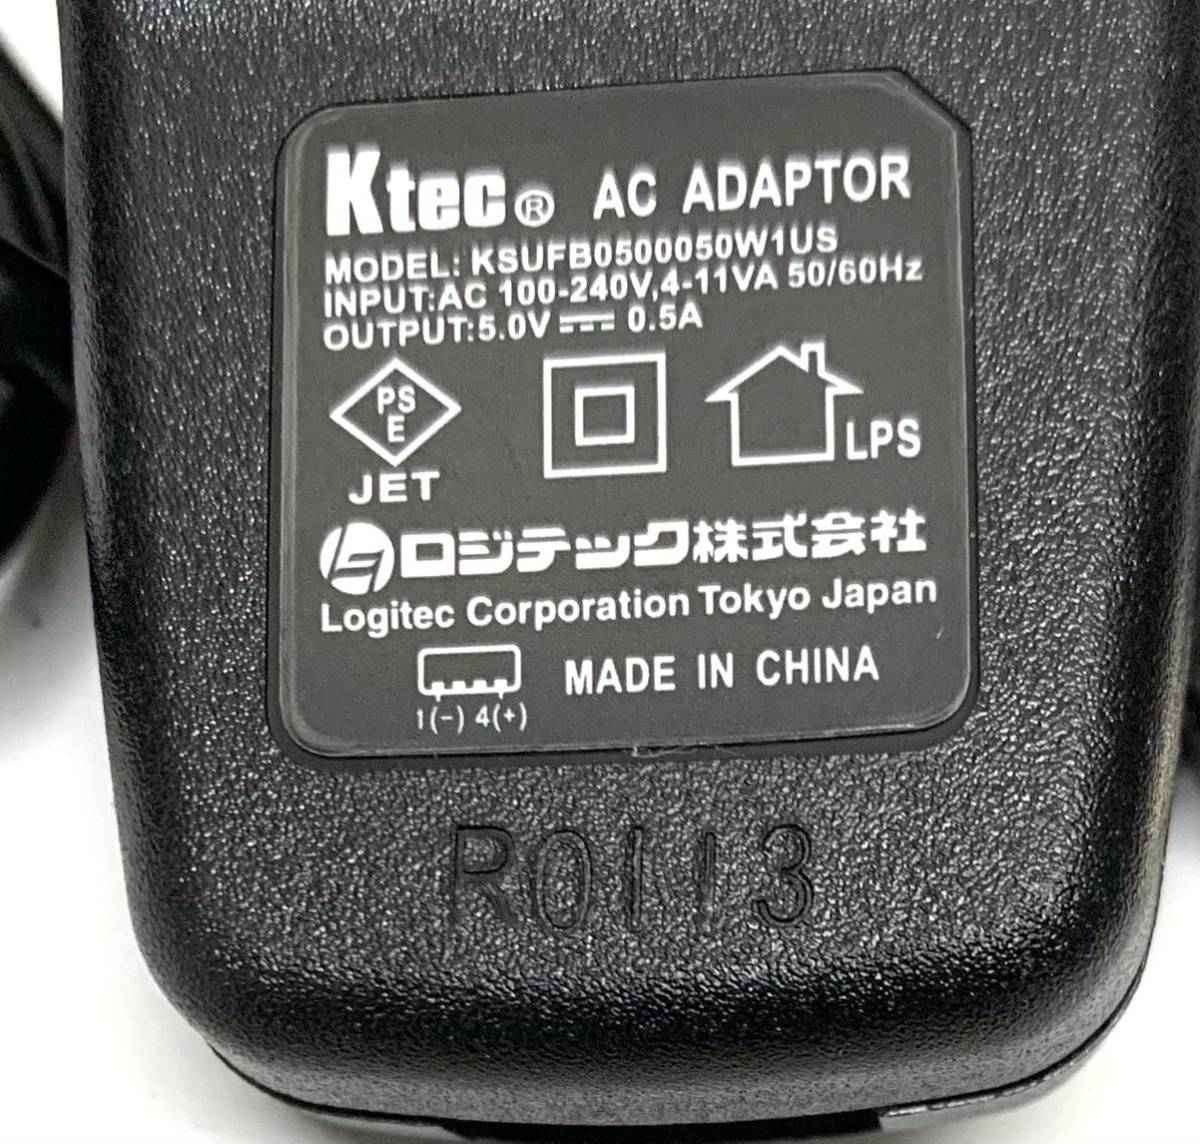 未使用Ktec(ロジテック)ACアダプタKSUFB0500050W1US(USB A/miniUSB Aケーブル付)2個セット 特価品_画像4